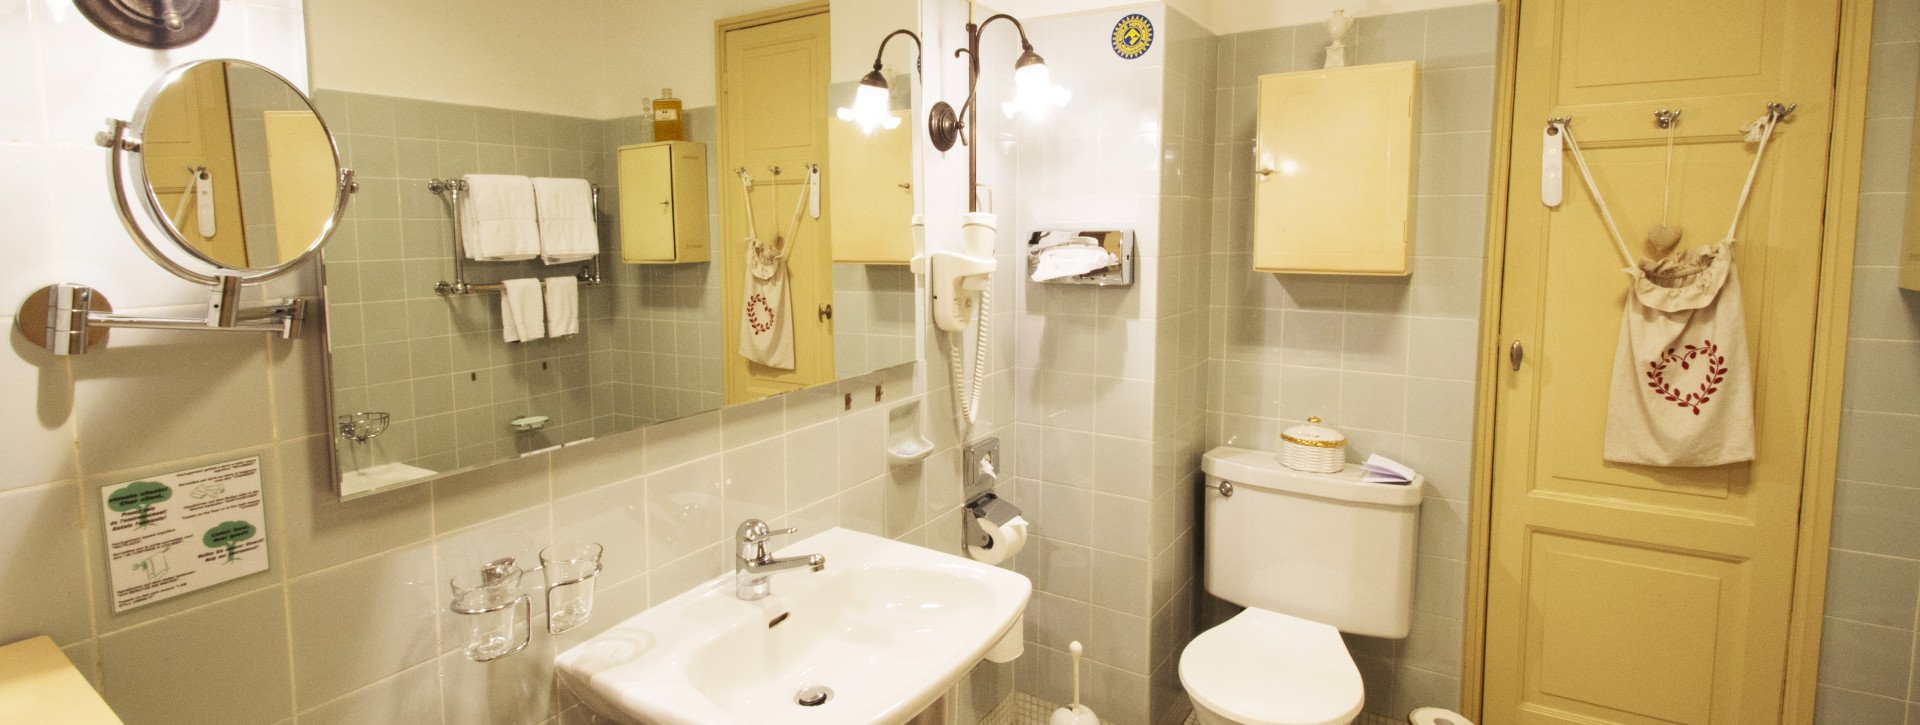 Vintage Badezimmer der späten 1950er Jahren mit Wanne/Dusche